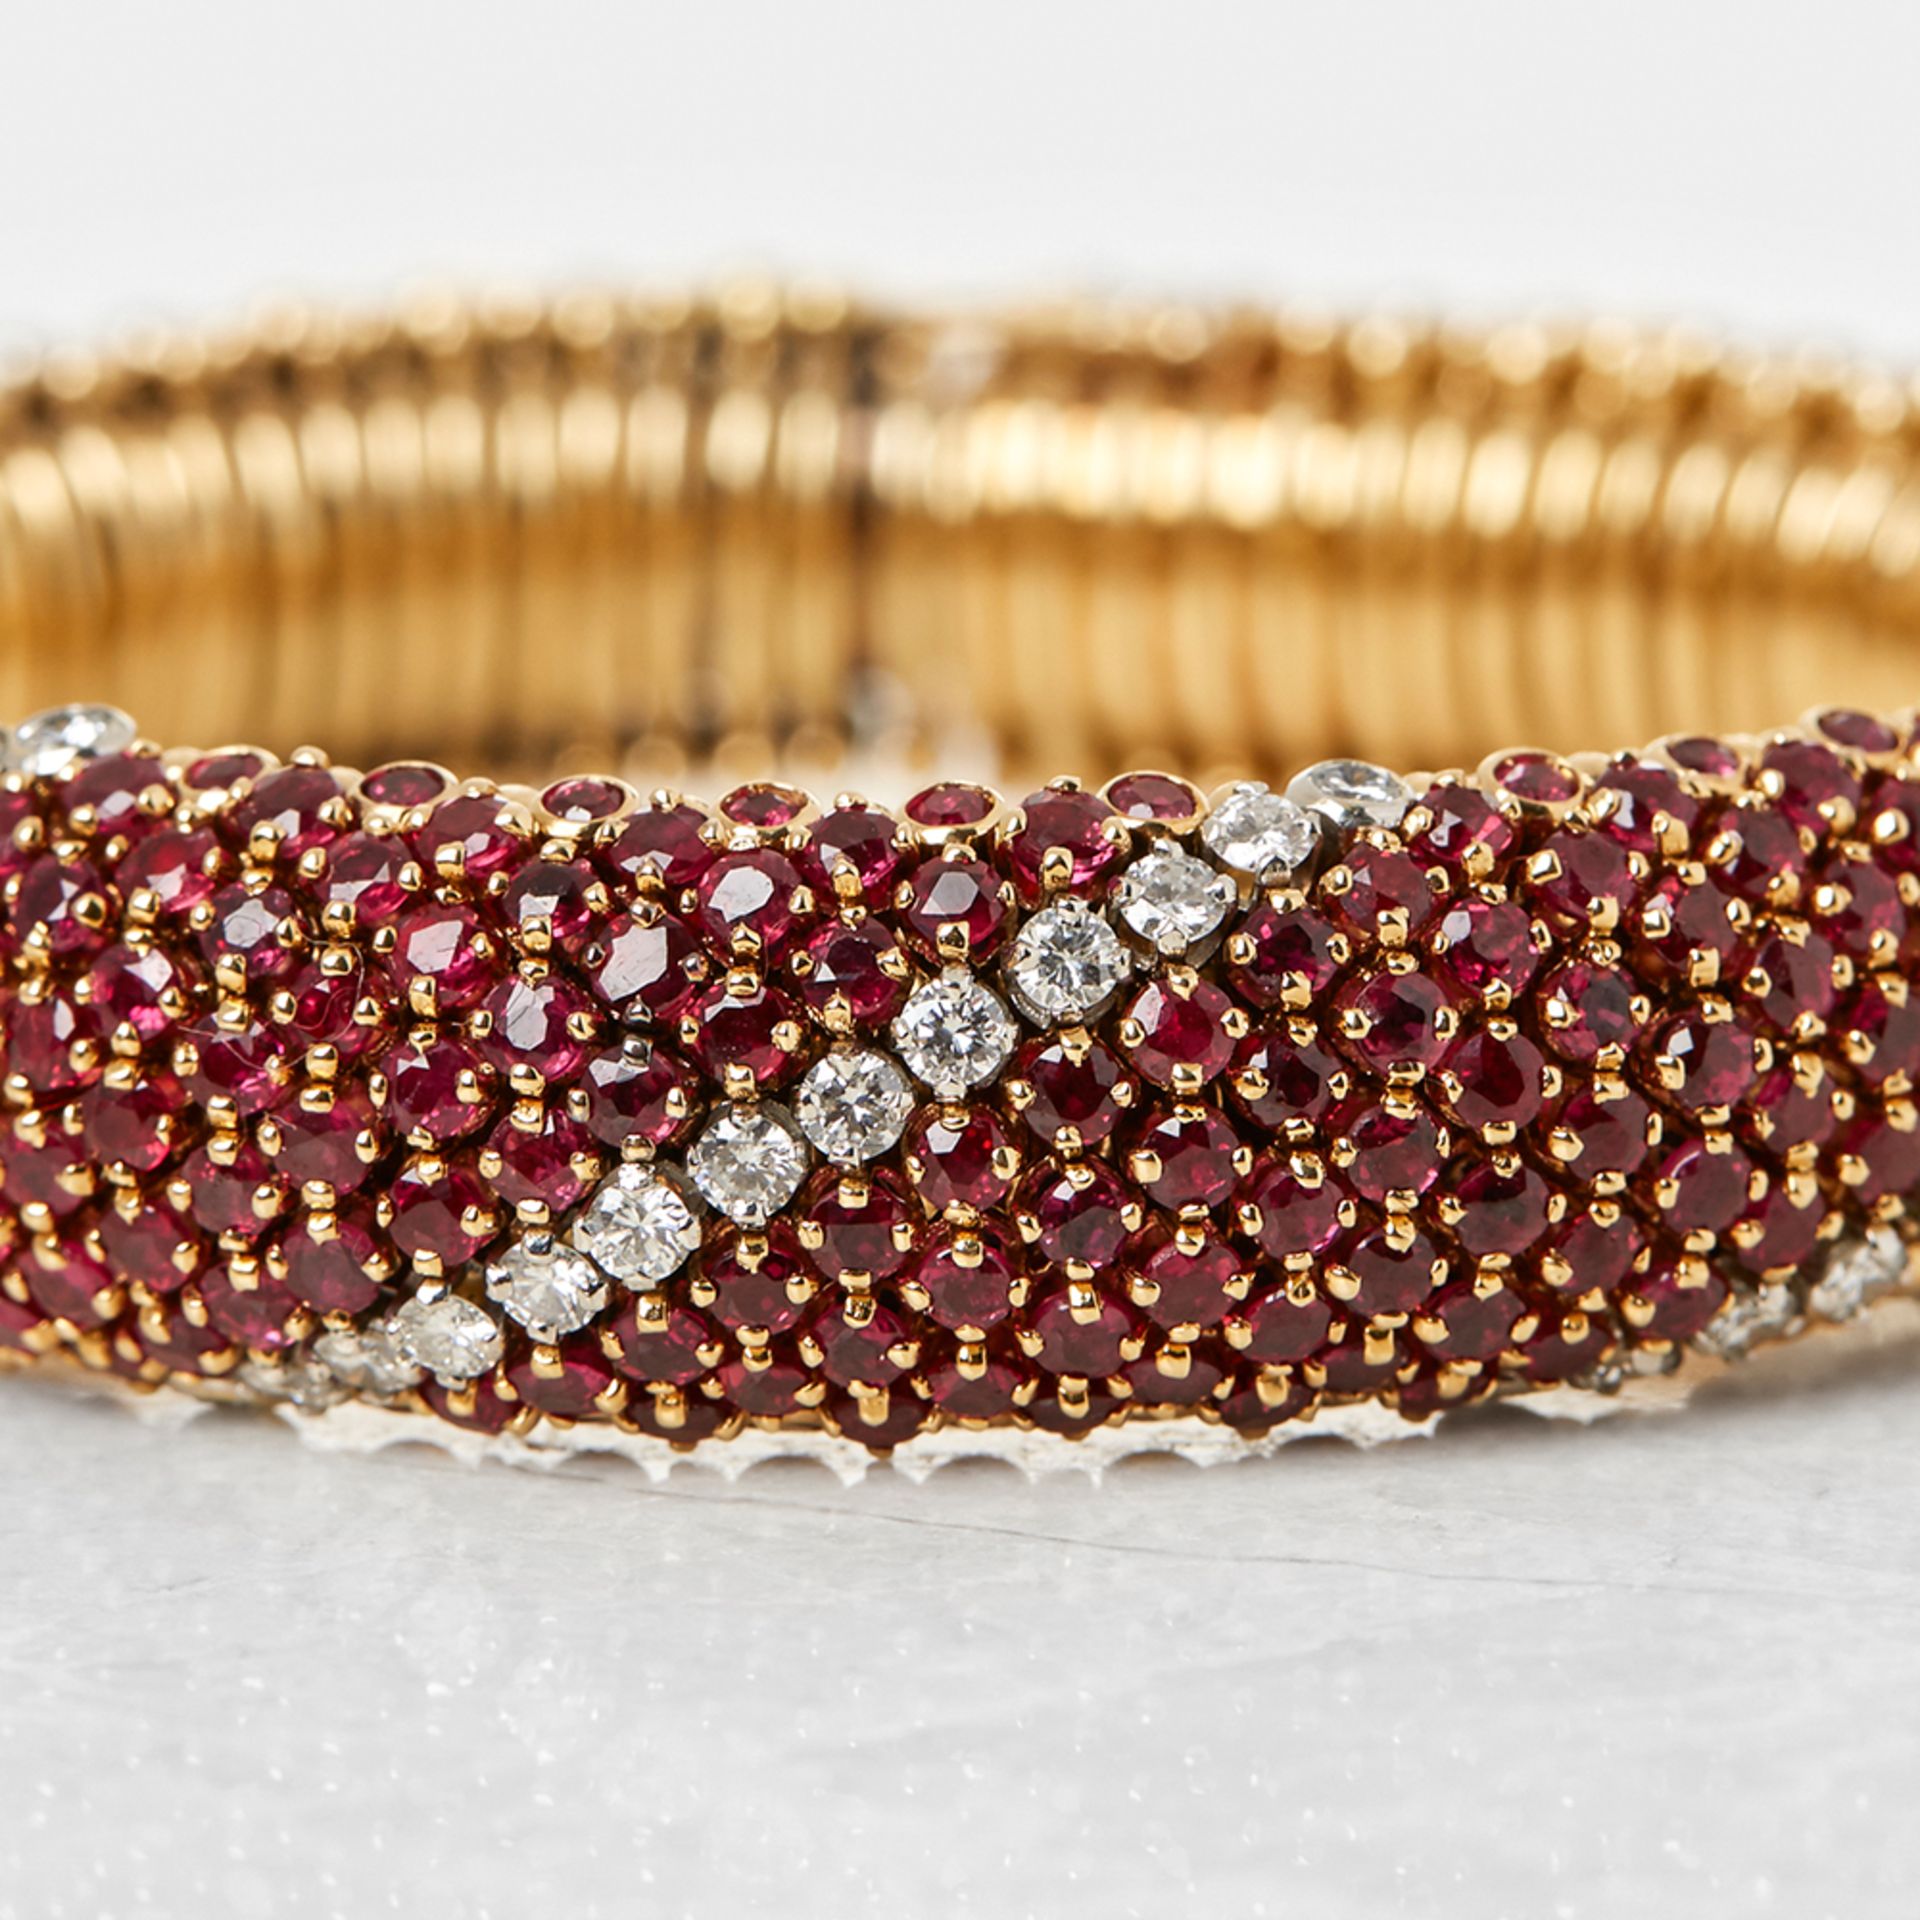 Van Cleef & Arpels 18k Yellow Gold Ruby & Diamond Bracelet - Image 3 of 7